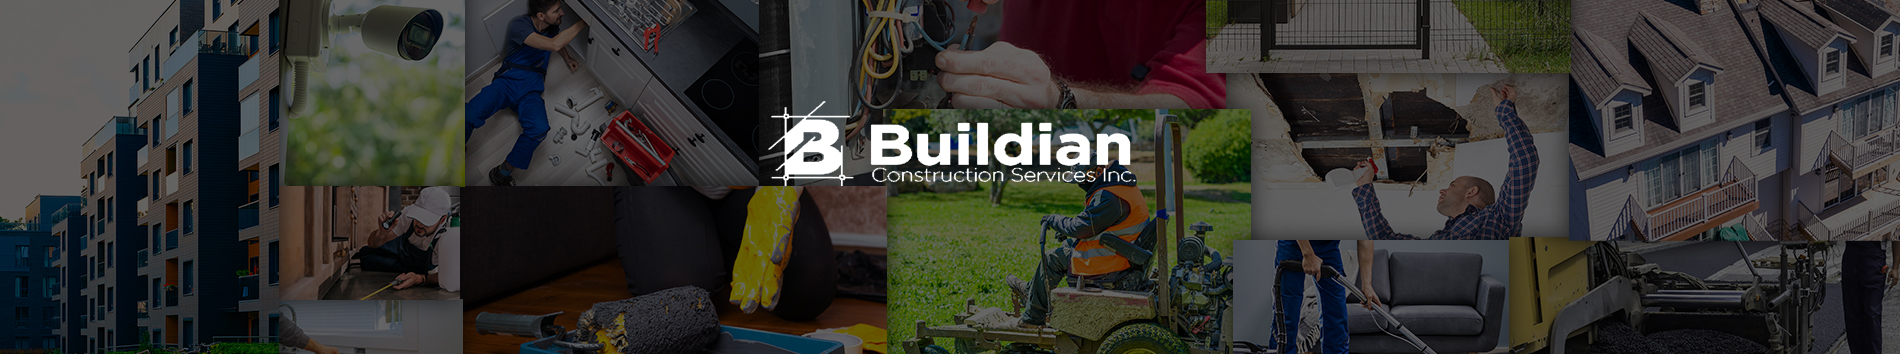 Buildian Construction Services